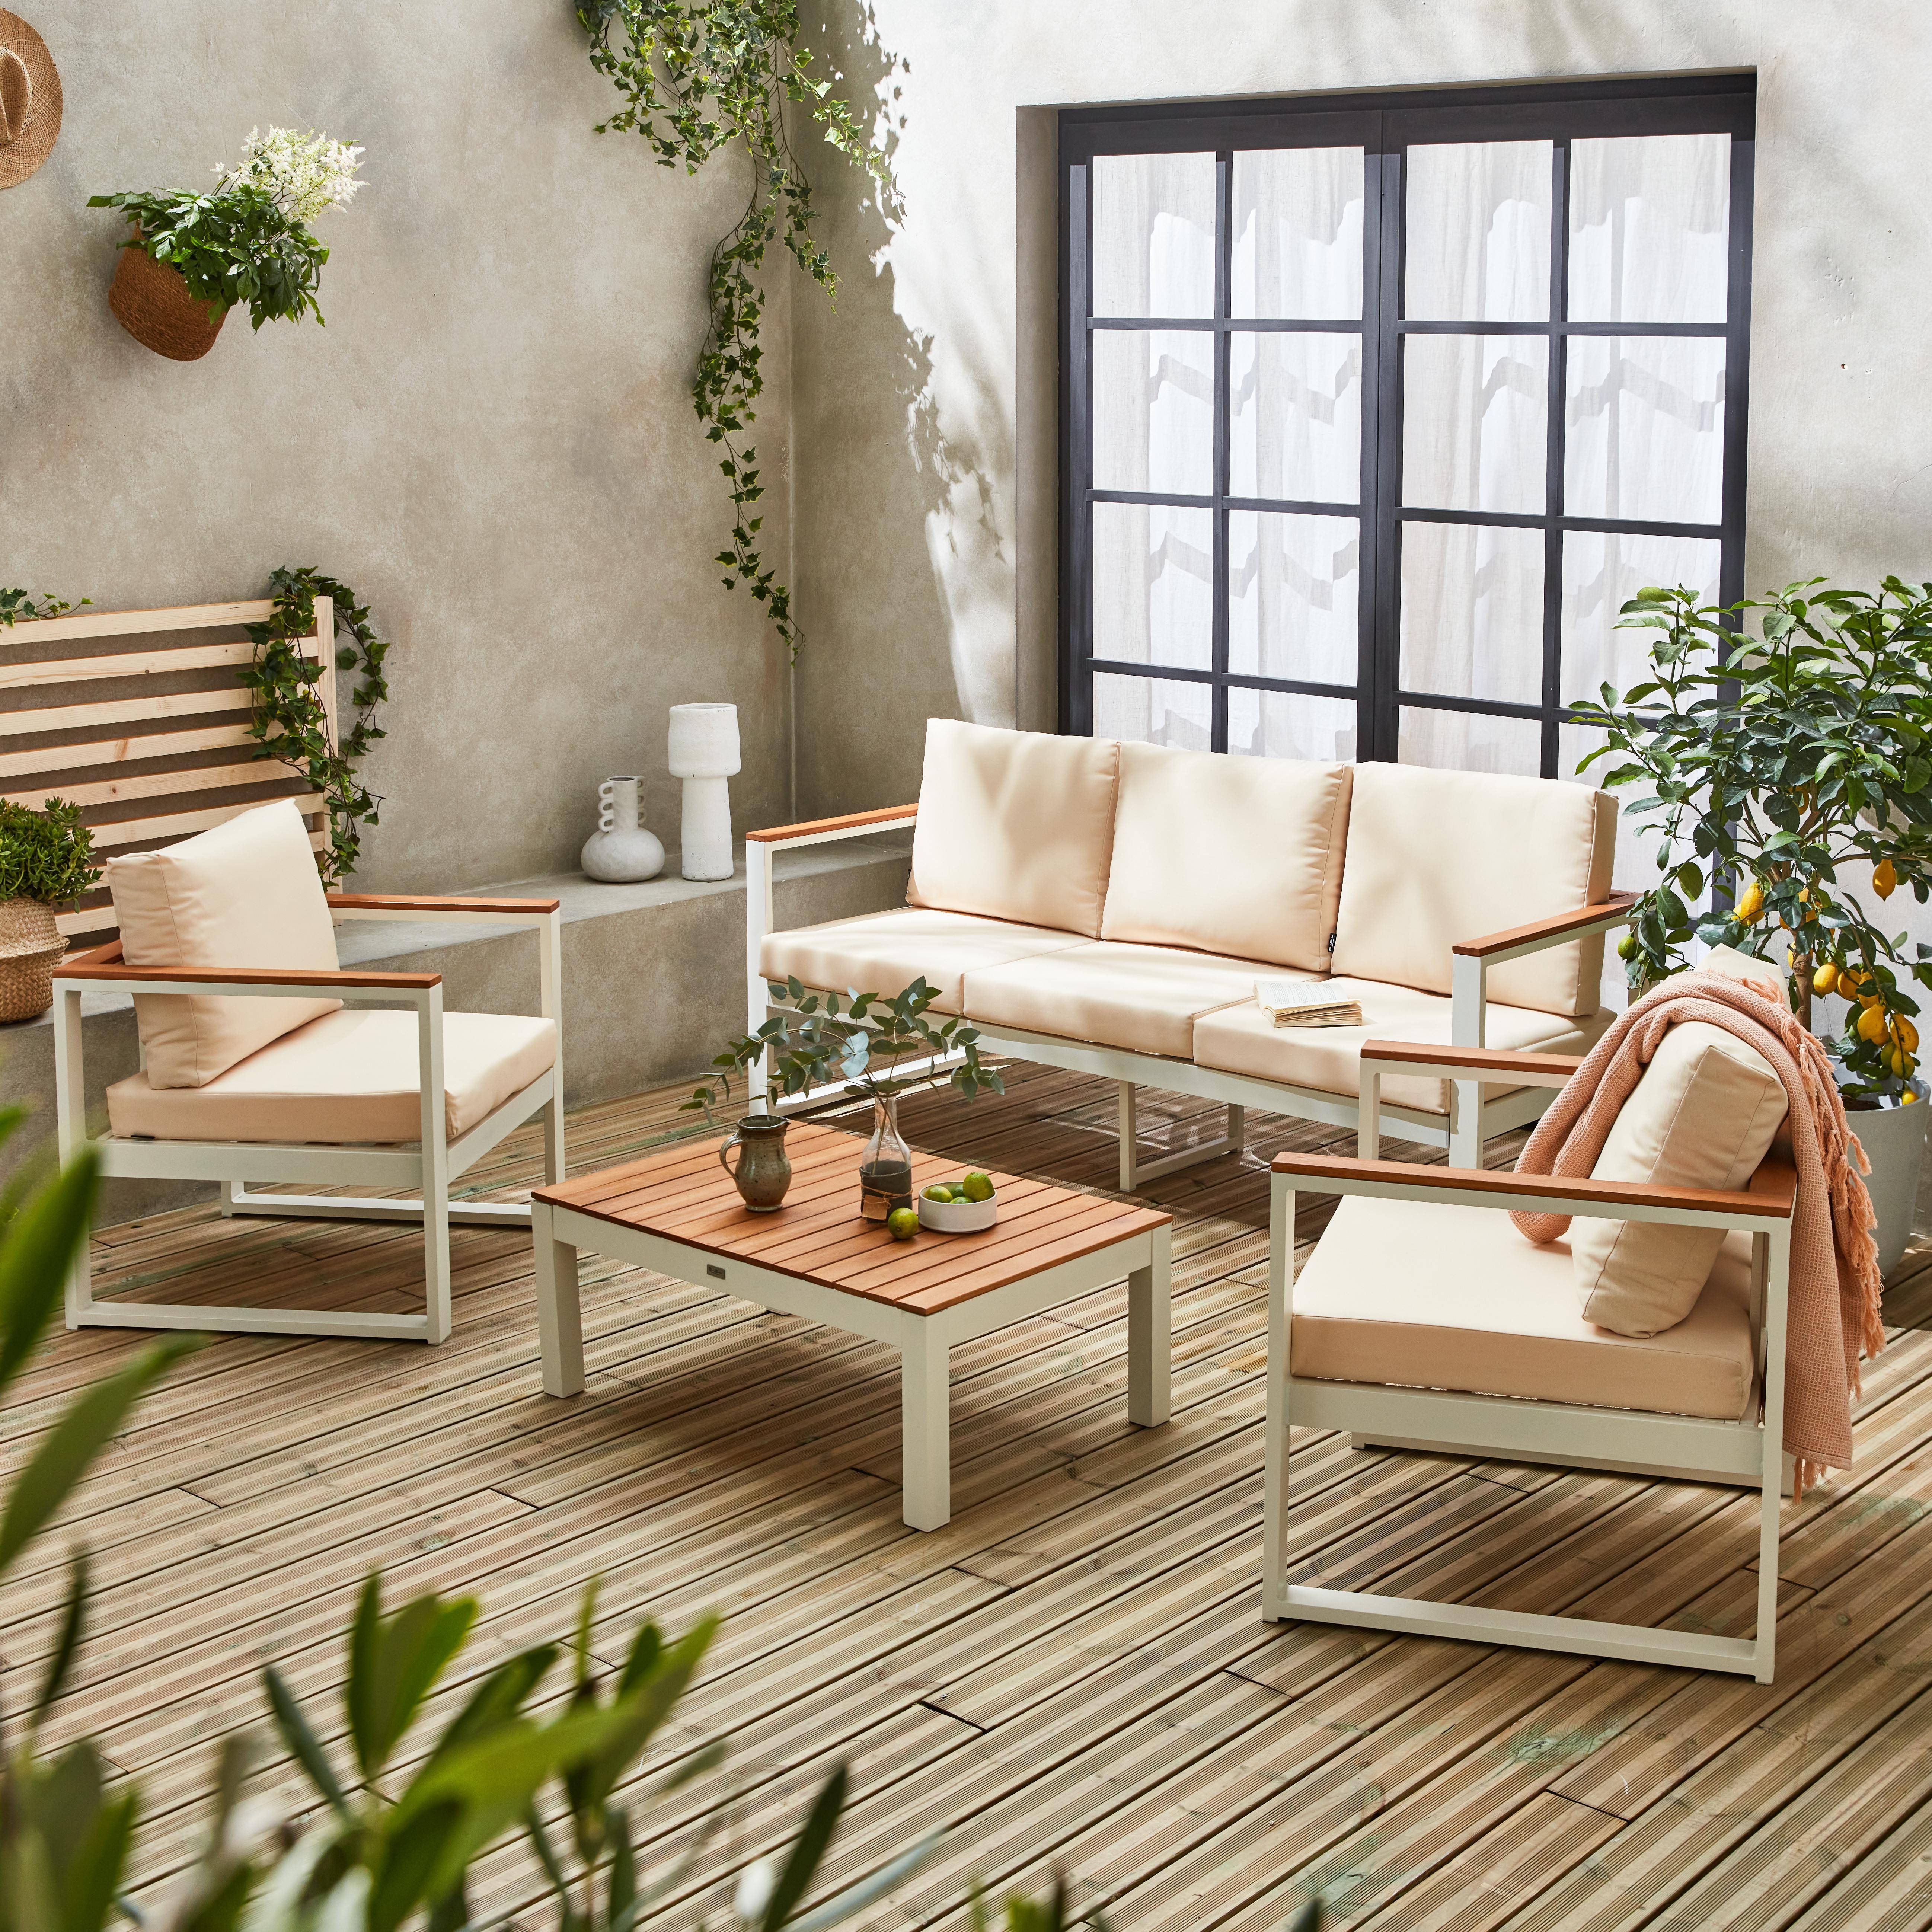 Conjunto de muebles de jardín 5 plazas aluminio y eucalipto - NAZCA - Estructura blanca, Cojines beige,sweeek,Photo1